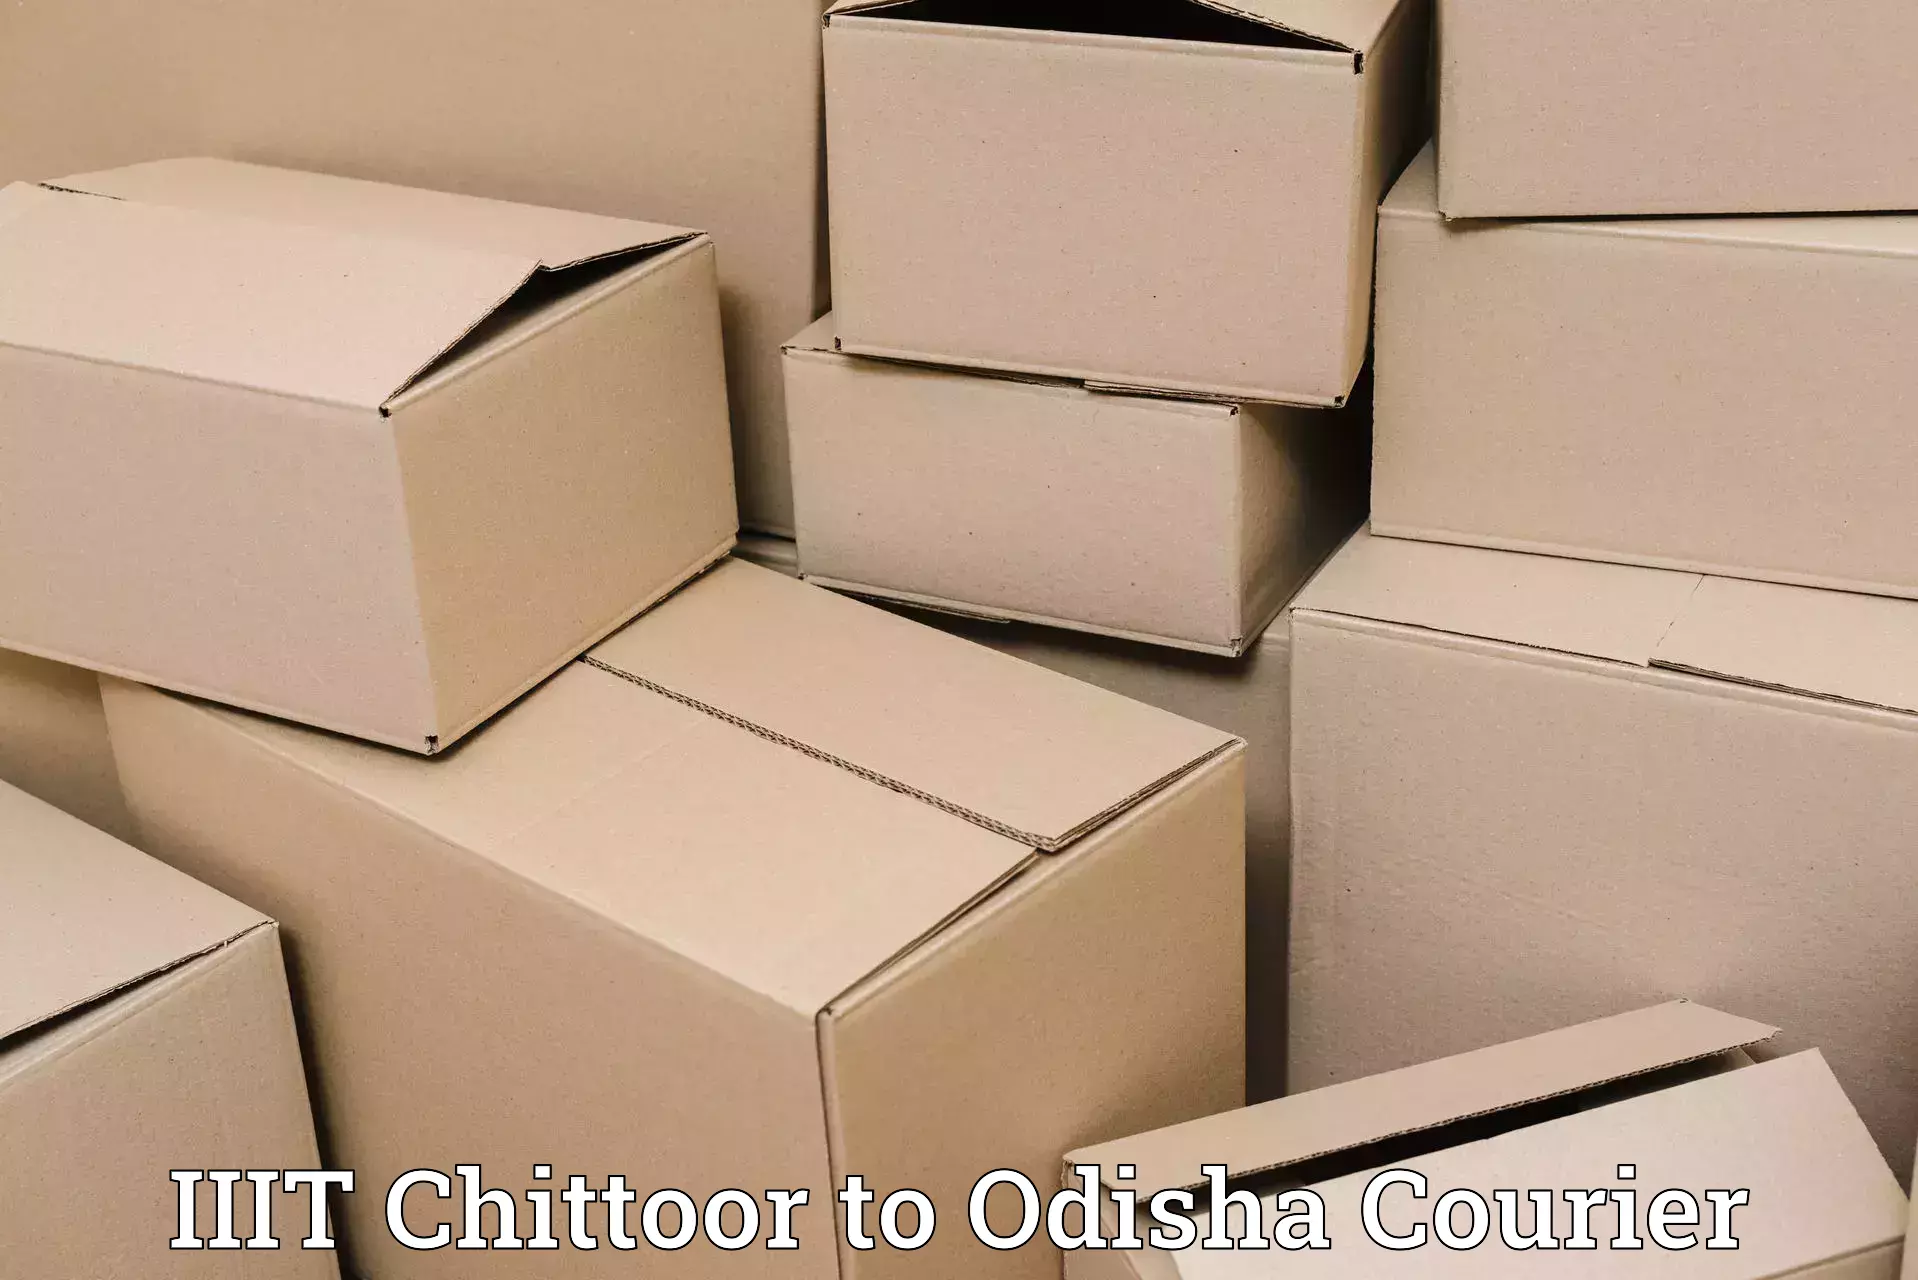 Express logistics in IIIT Chittoor to Daspalla